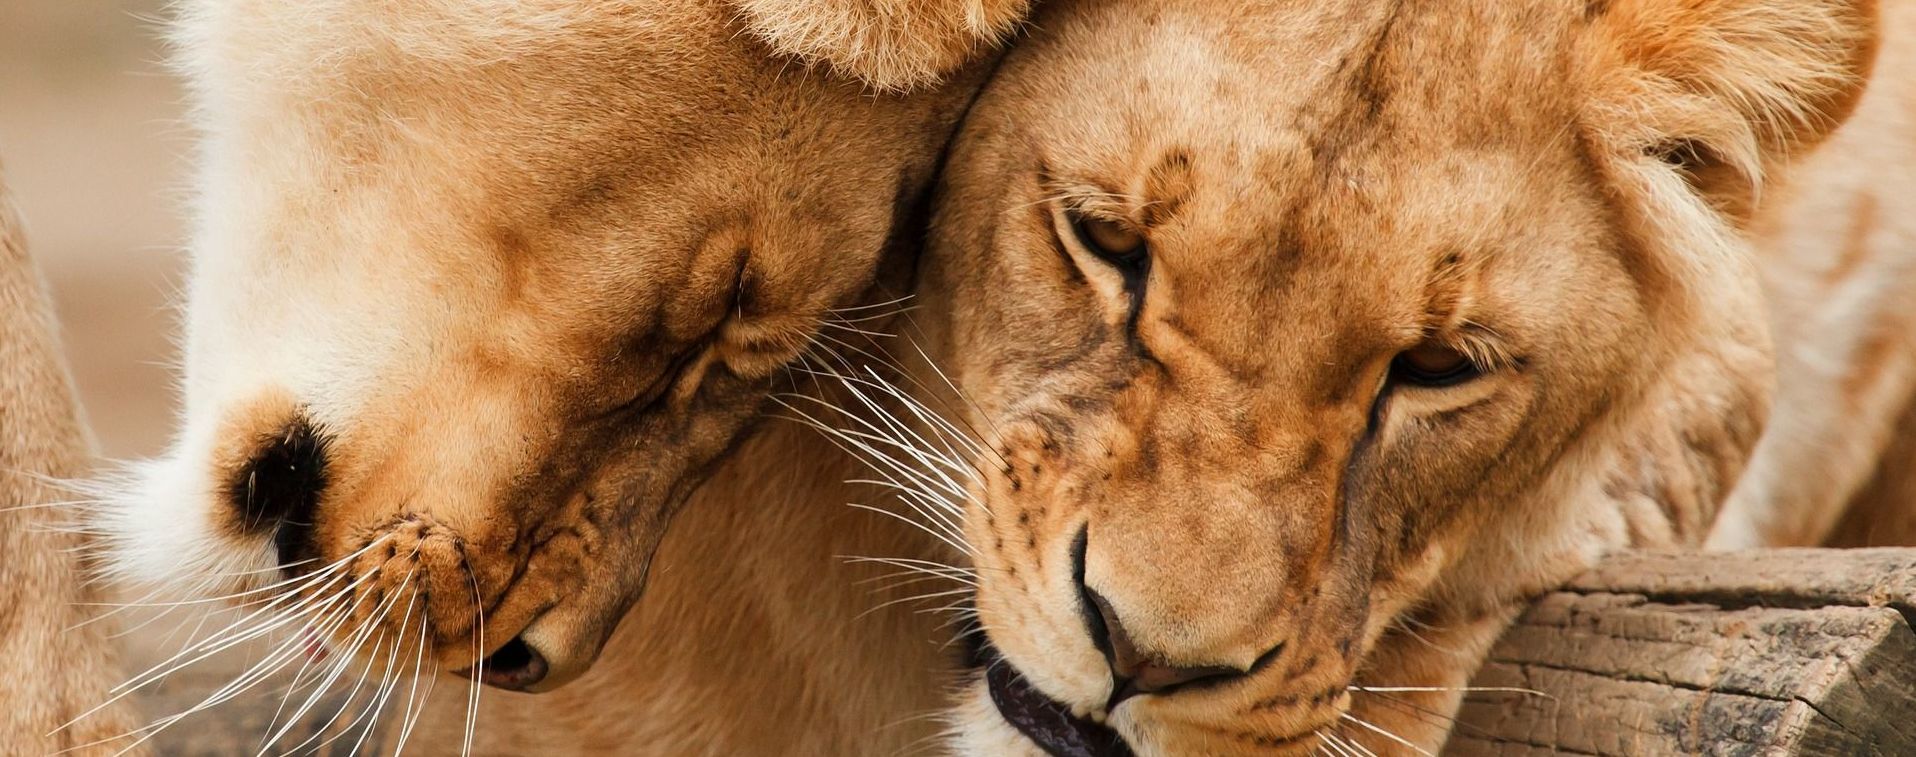 У Танзанії леви напали на групу дітей: є загиблі